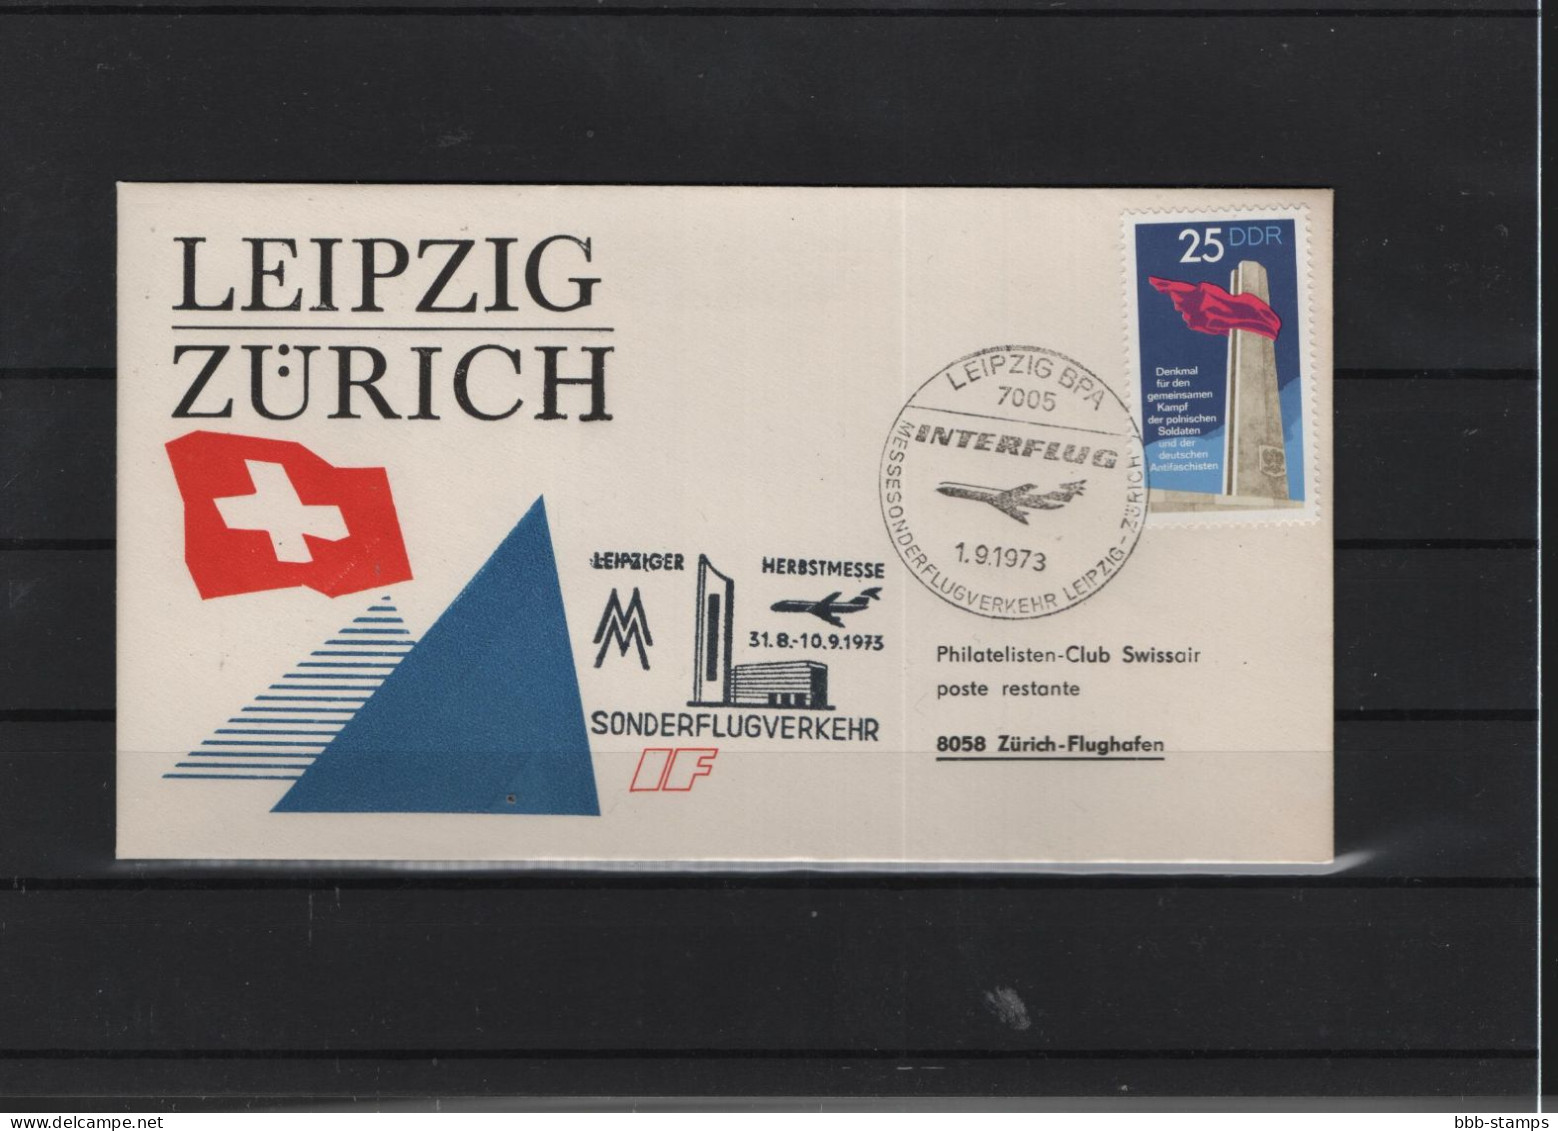 Schweiz Luftpost FFC  Interflug 1.9.1973 Leipzig - Zürich - First Flight Covers